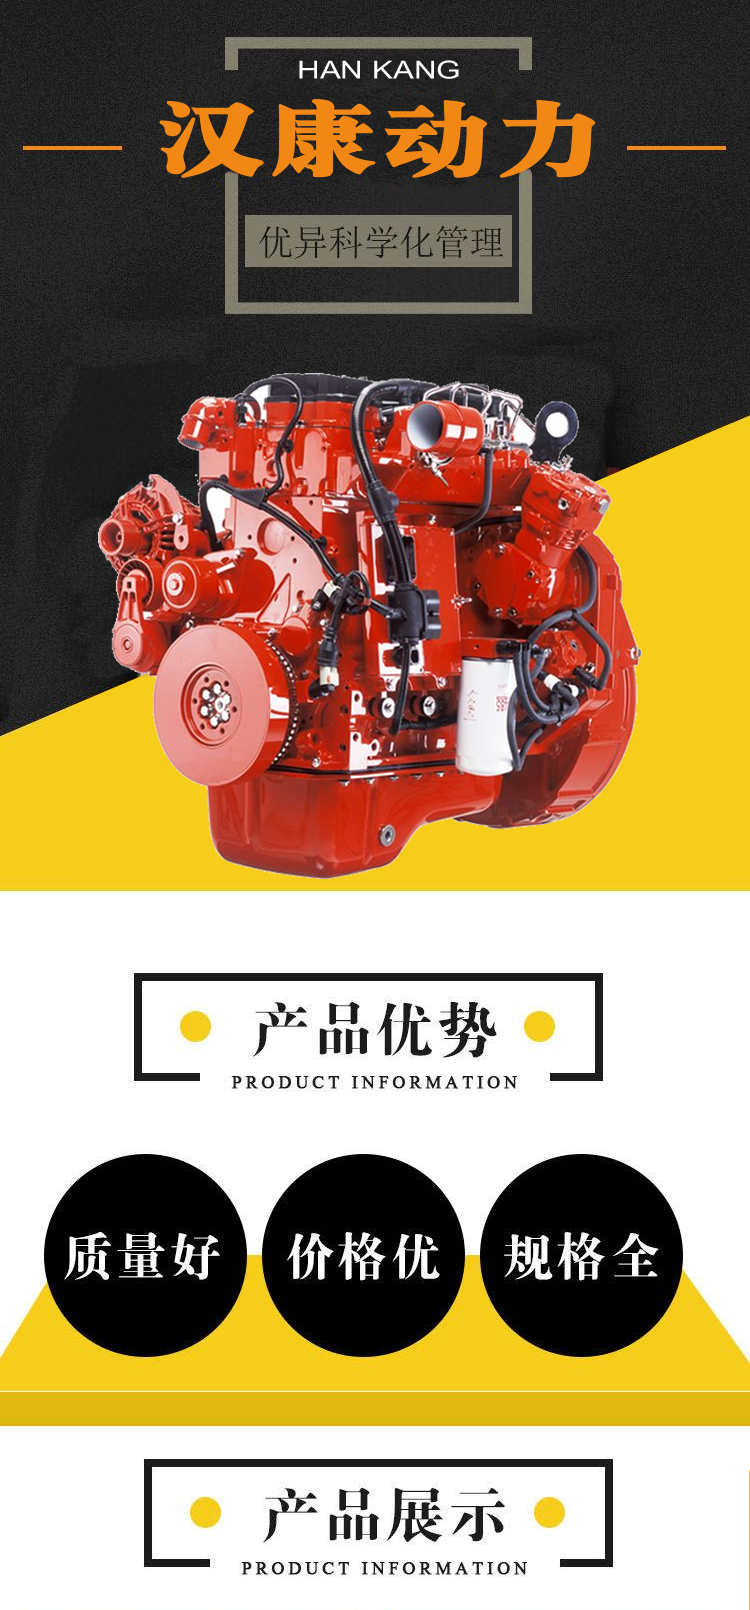 Cummins QSC/ISC engine fuel pump/high-pressure fuel injection pump 4076442